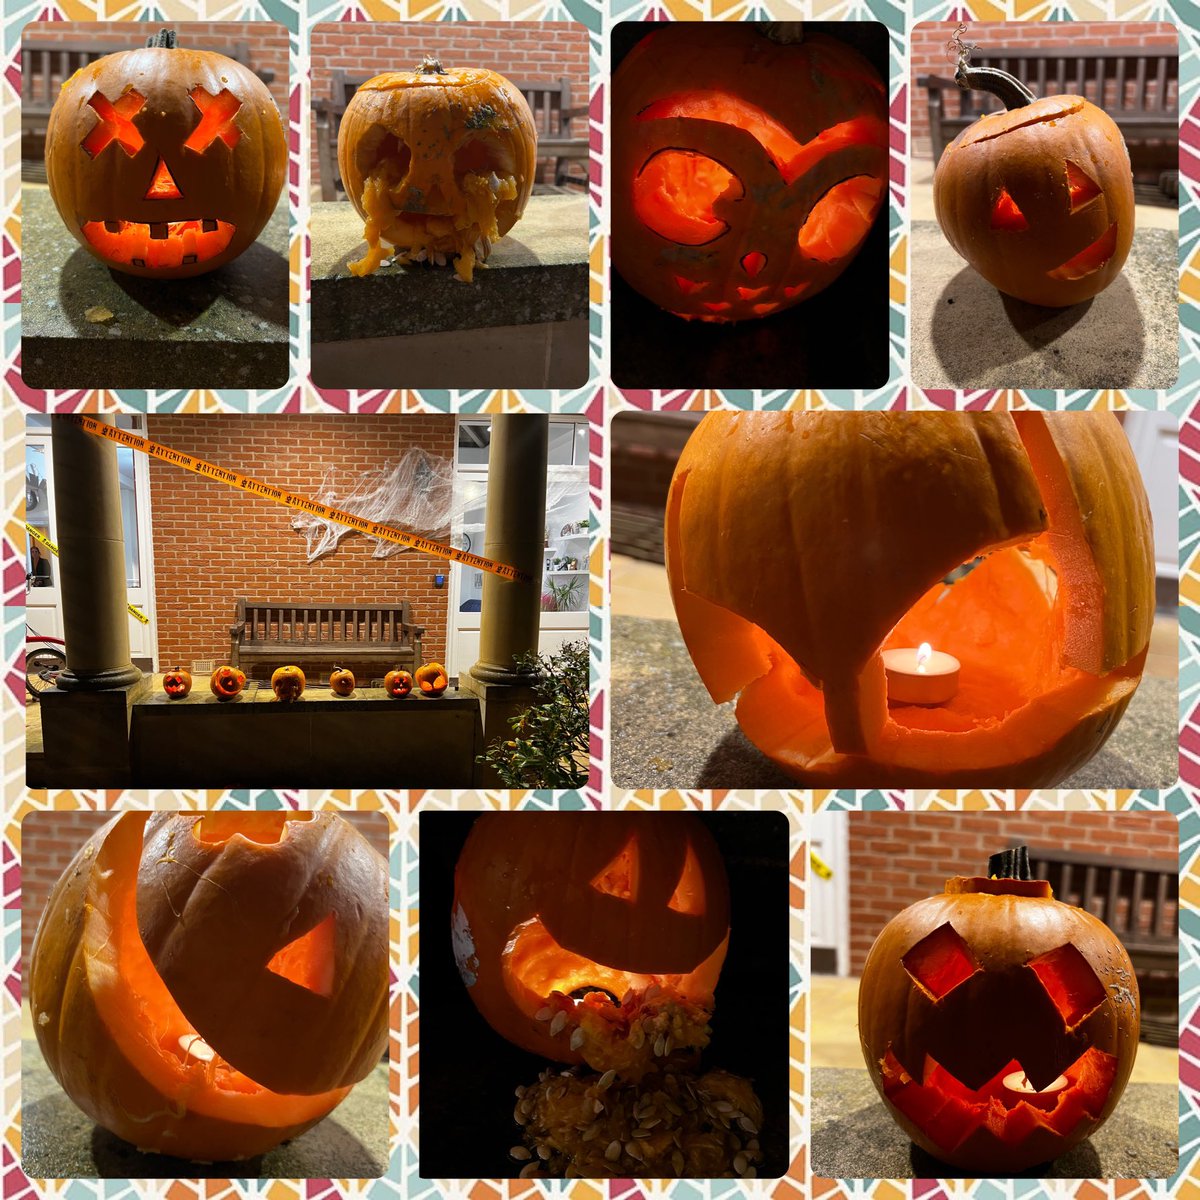 Stevens gets spooky 🎃#HalloweenFun #HouseFamilies